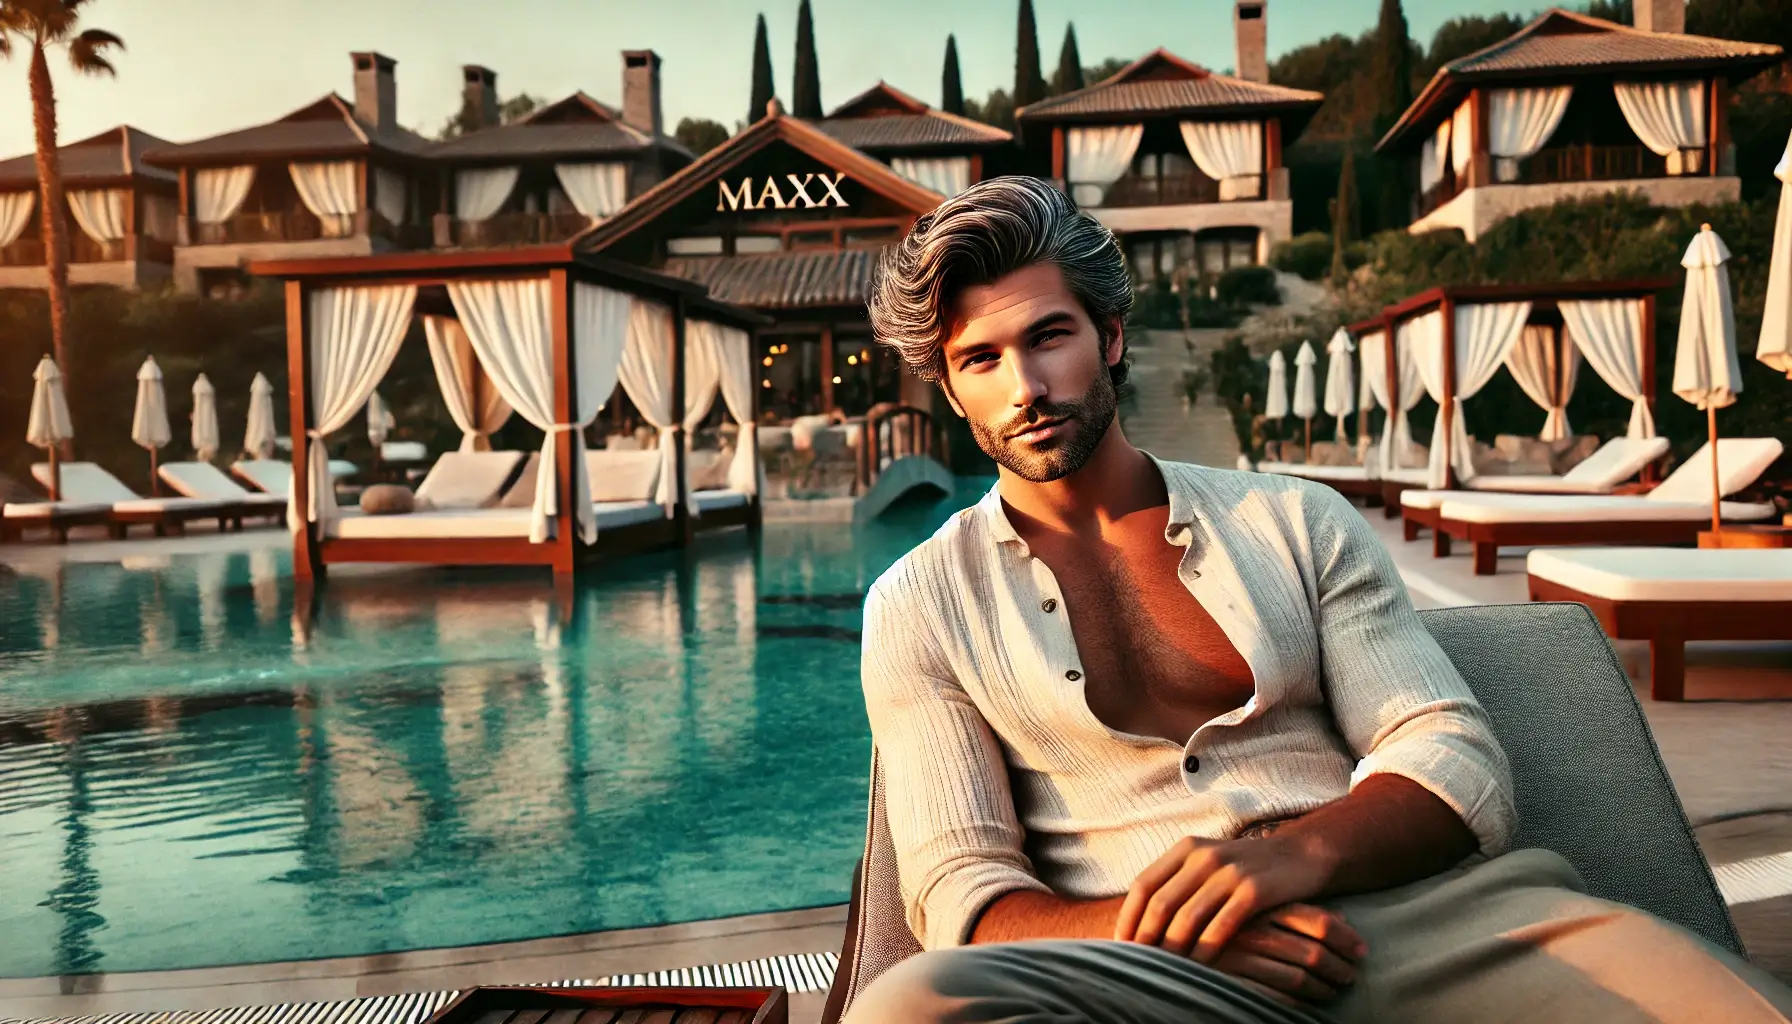 изображение, на котором изображен мужчина с седыми волосами и томным взглядом, наслаждающийся отдыхом в отеле Maxx Royal Belek Golf Resort